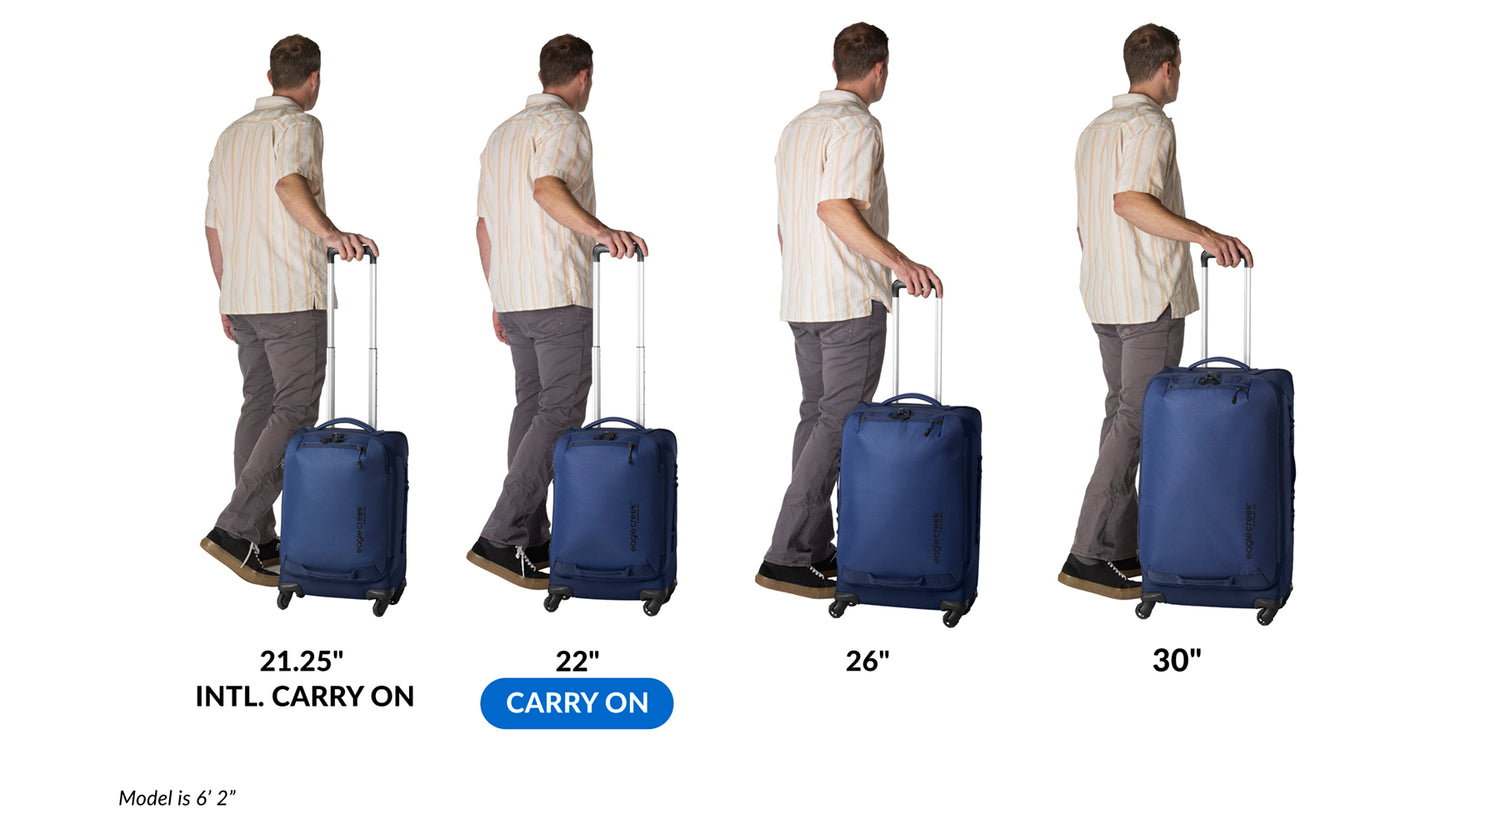 Expanse 4-Wheel 22" Carry-On Luggage - BLACK